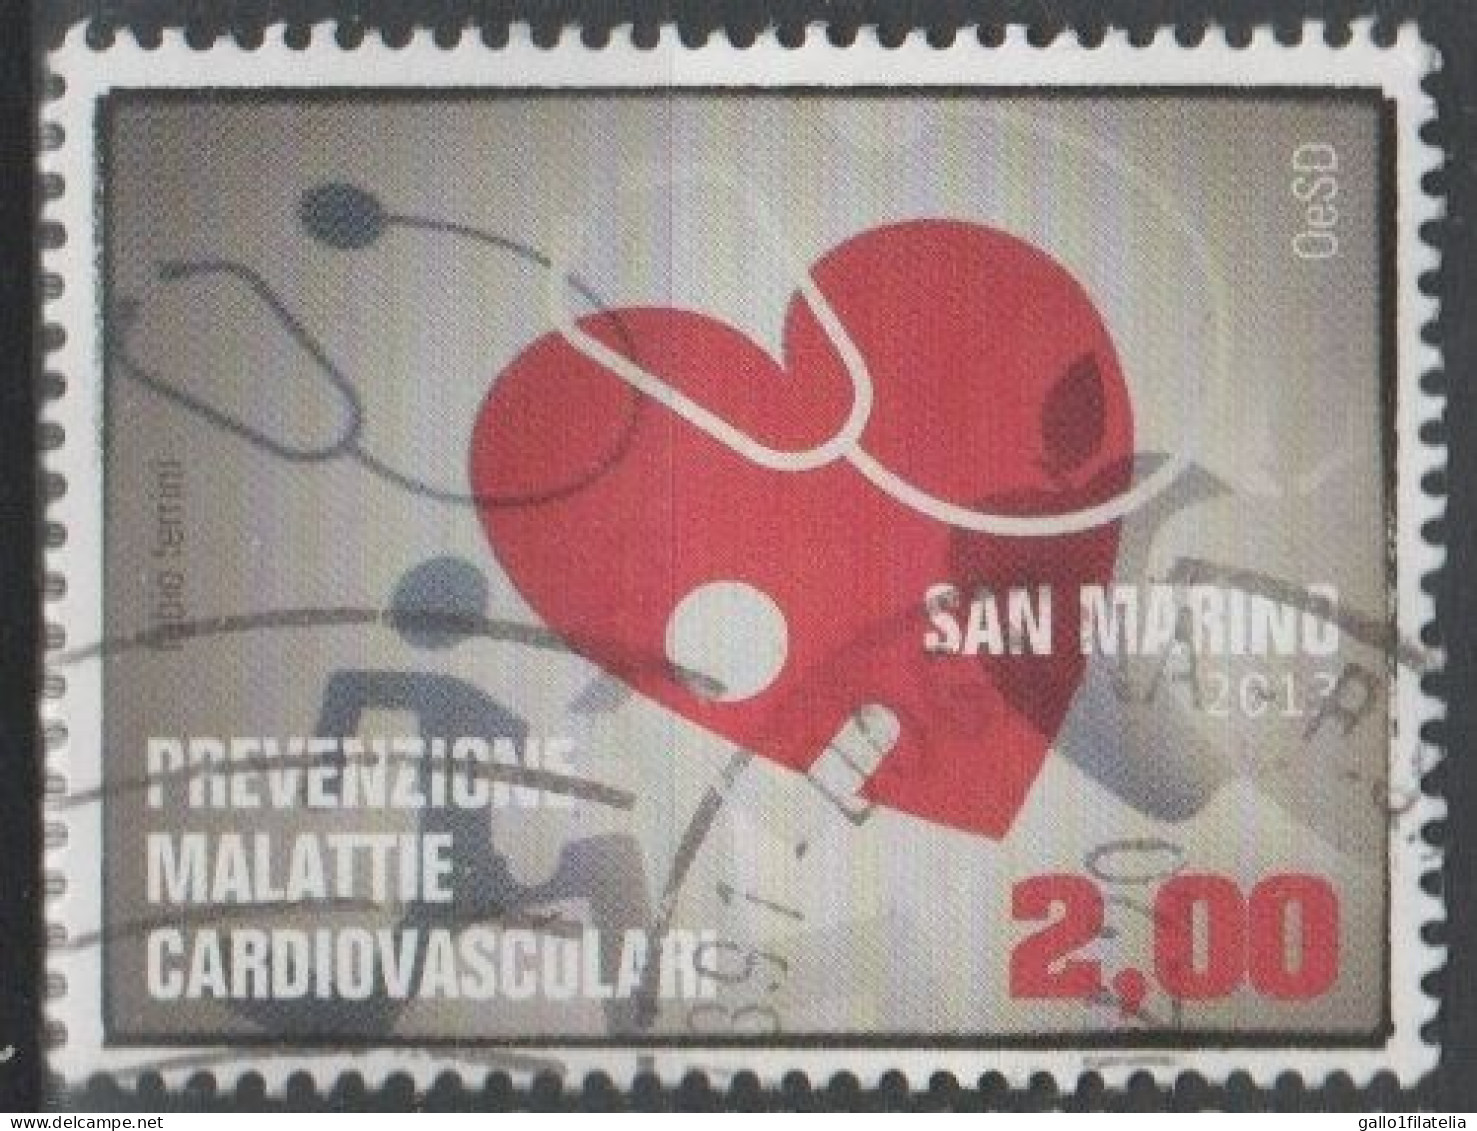 2013 - SAN MARINO - PREVENZIONE MALATTIE CARDIOVASCOLARI / PREVENTION OF CARDIOVASCULAR DISEASES. USATO - Oblitérés